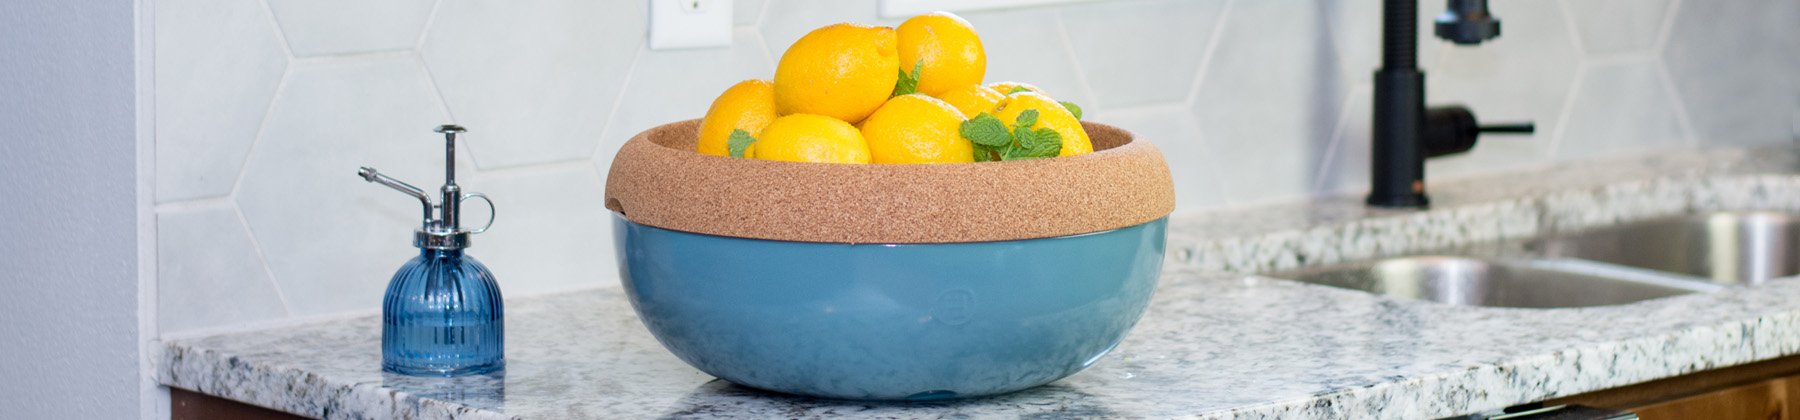 Photo of Emile Henry storage bowl with lemons.